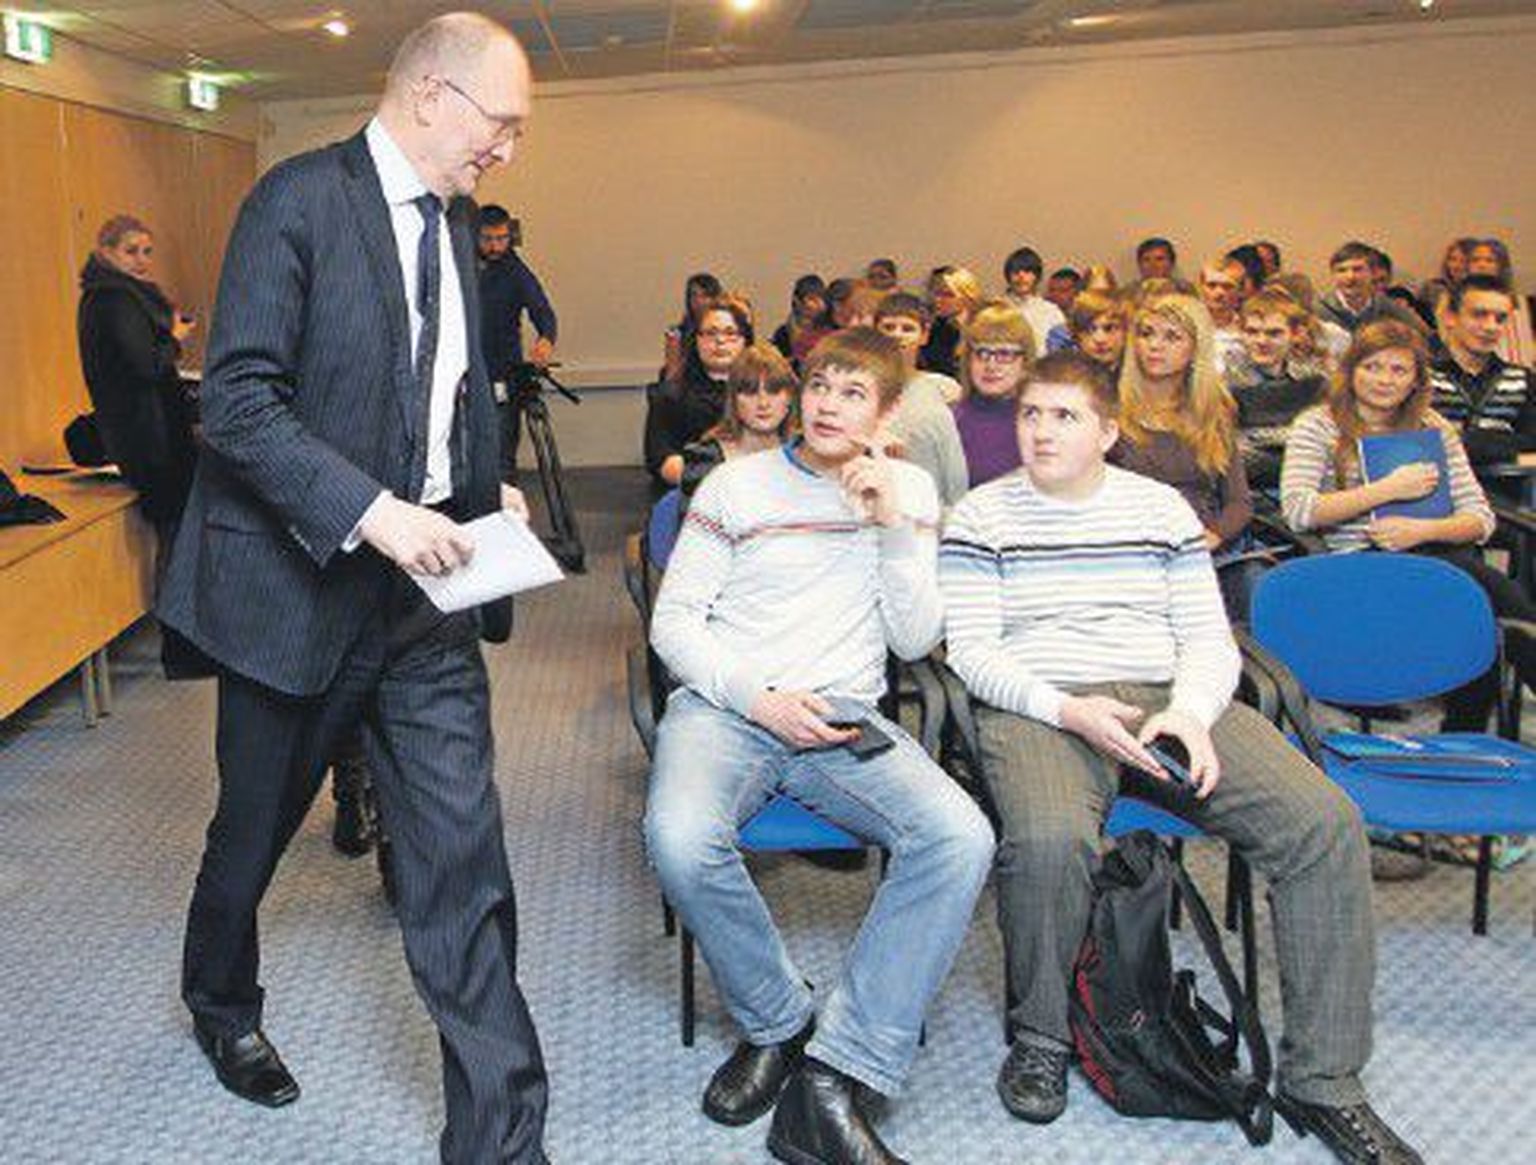 Министр образования Яак Аавиксоо говорил с русскими школьниками по-русски и по-эстонски о том, что владение многими языками — это большой плюс в жизни.